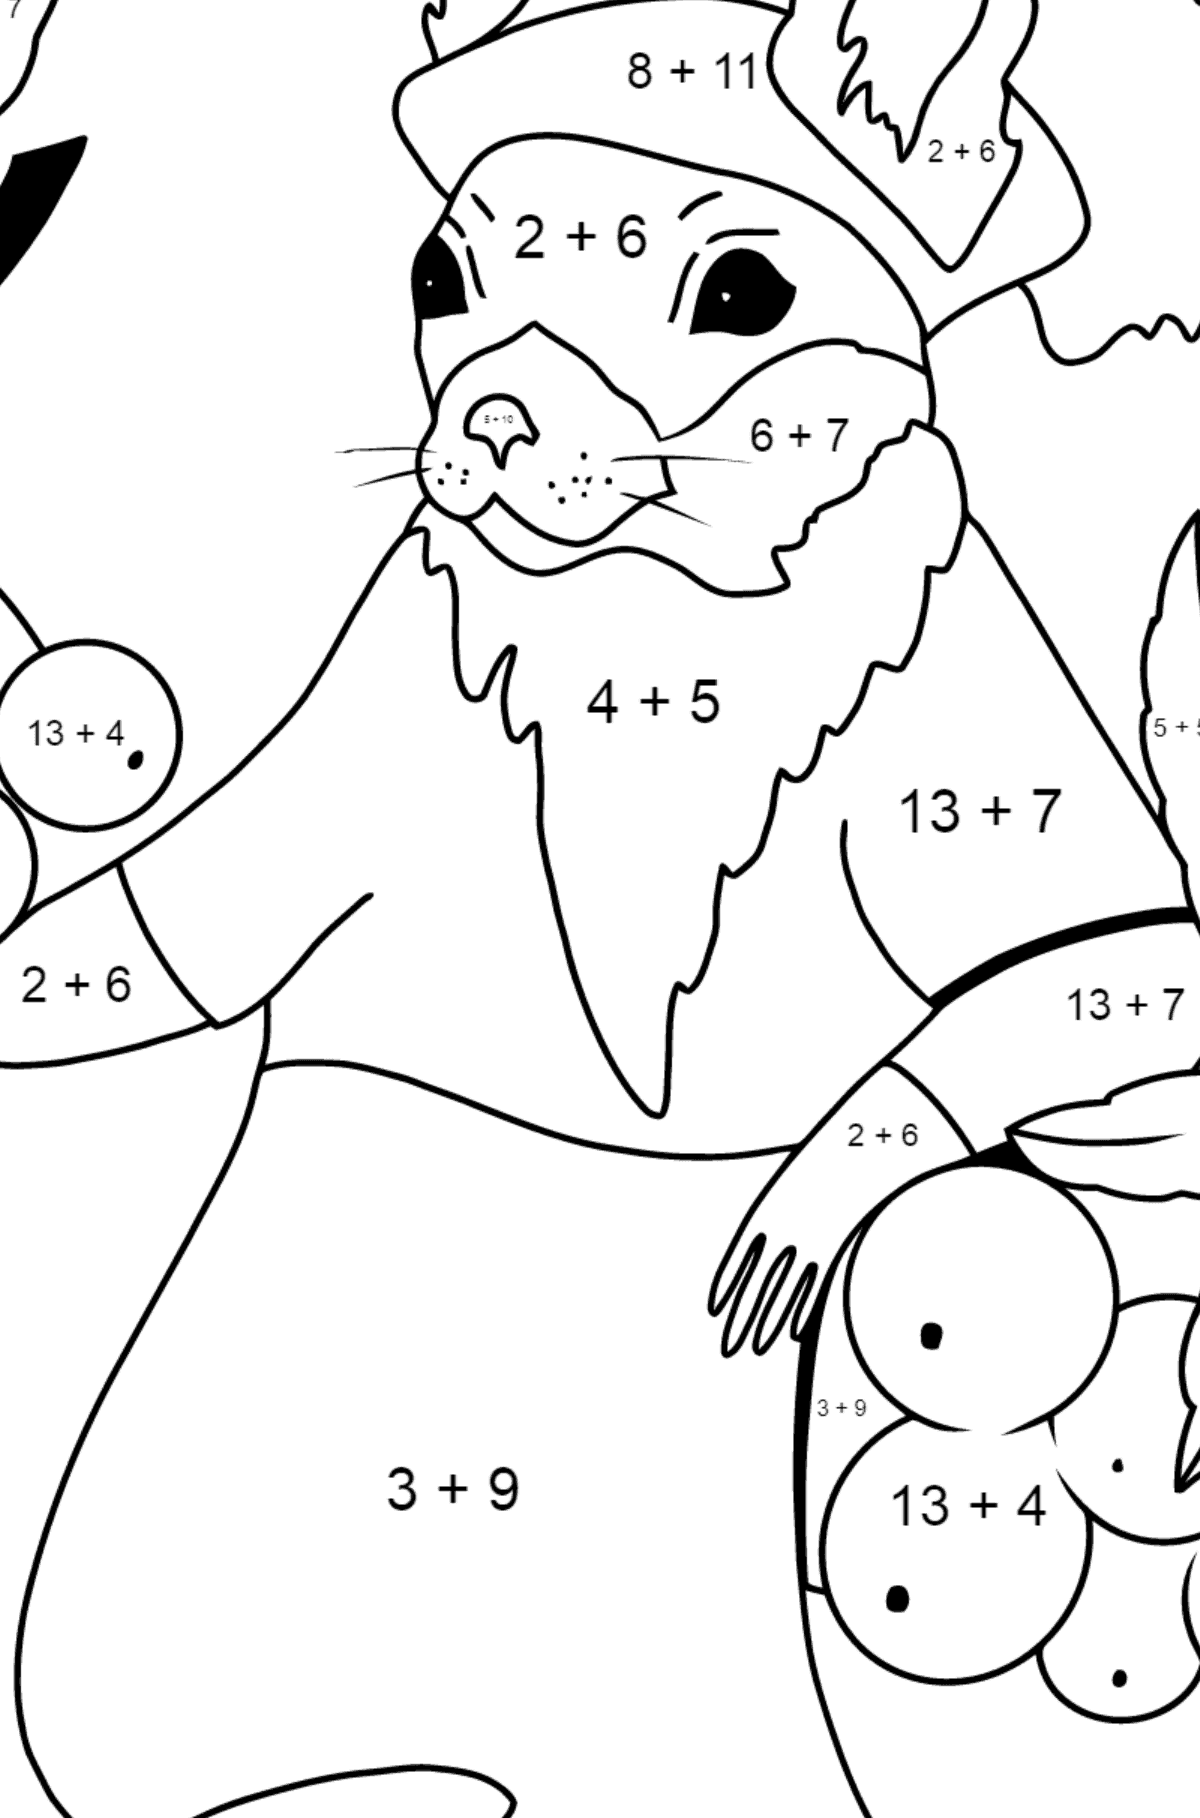 Herbstliche Ausmalbild - Ein Eichhörnchen mit roten Vogelbeeren - Mathe Ausmalbilder - Addition für Kinder